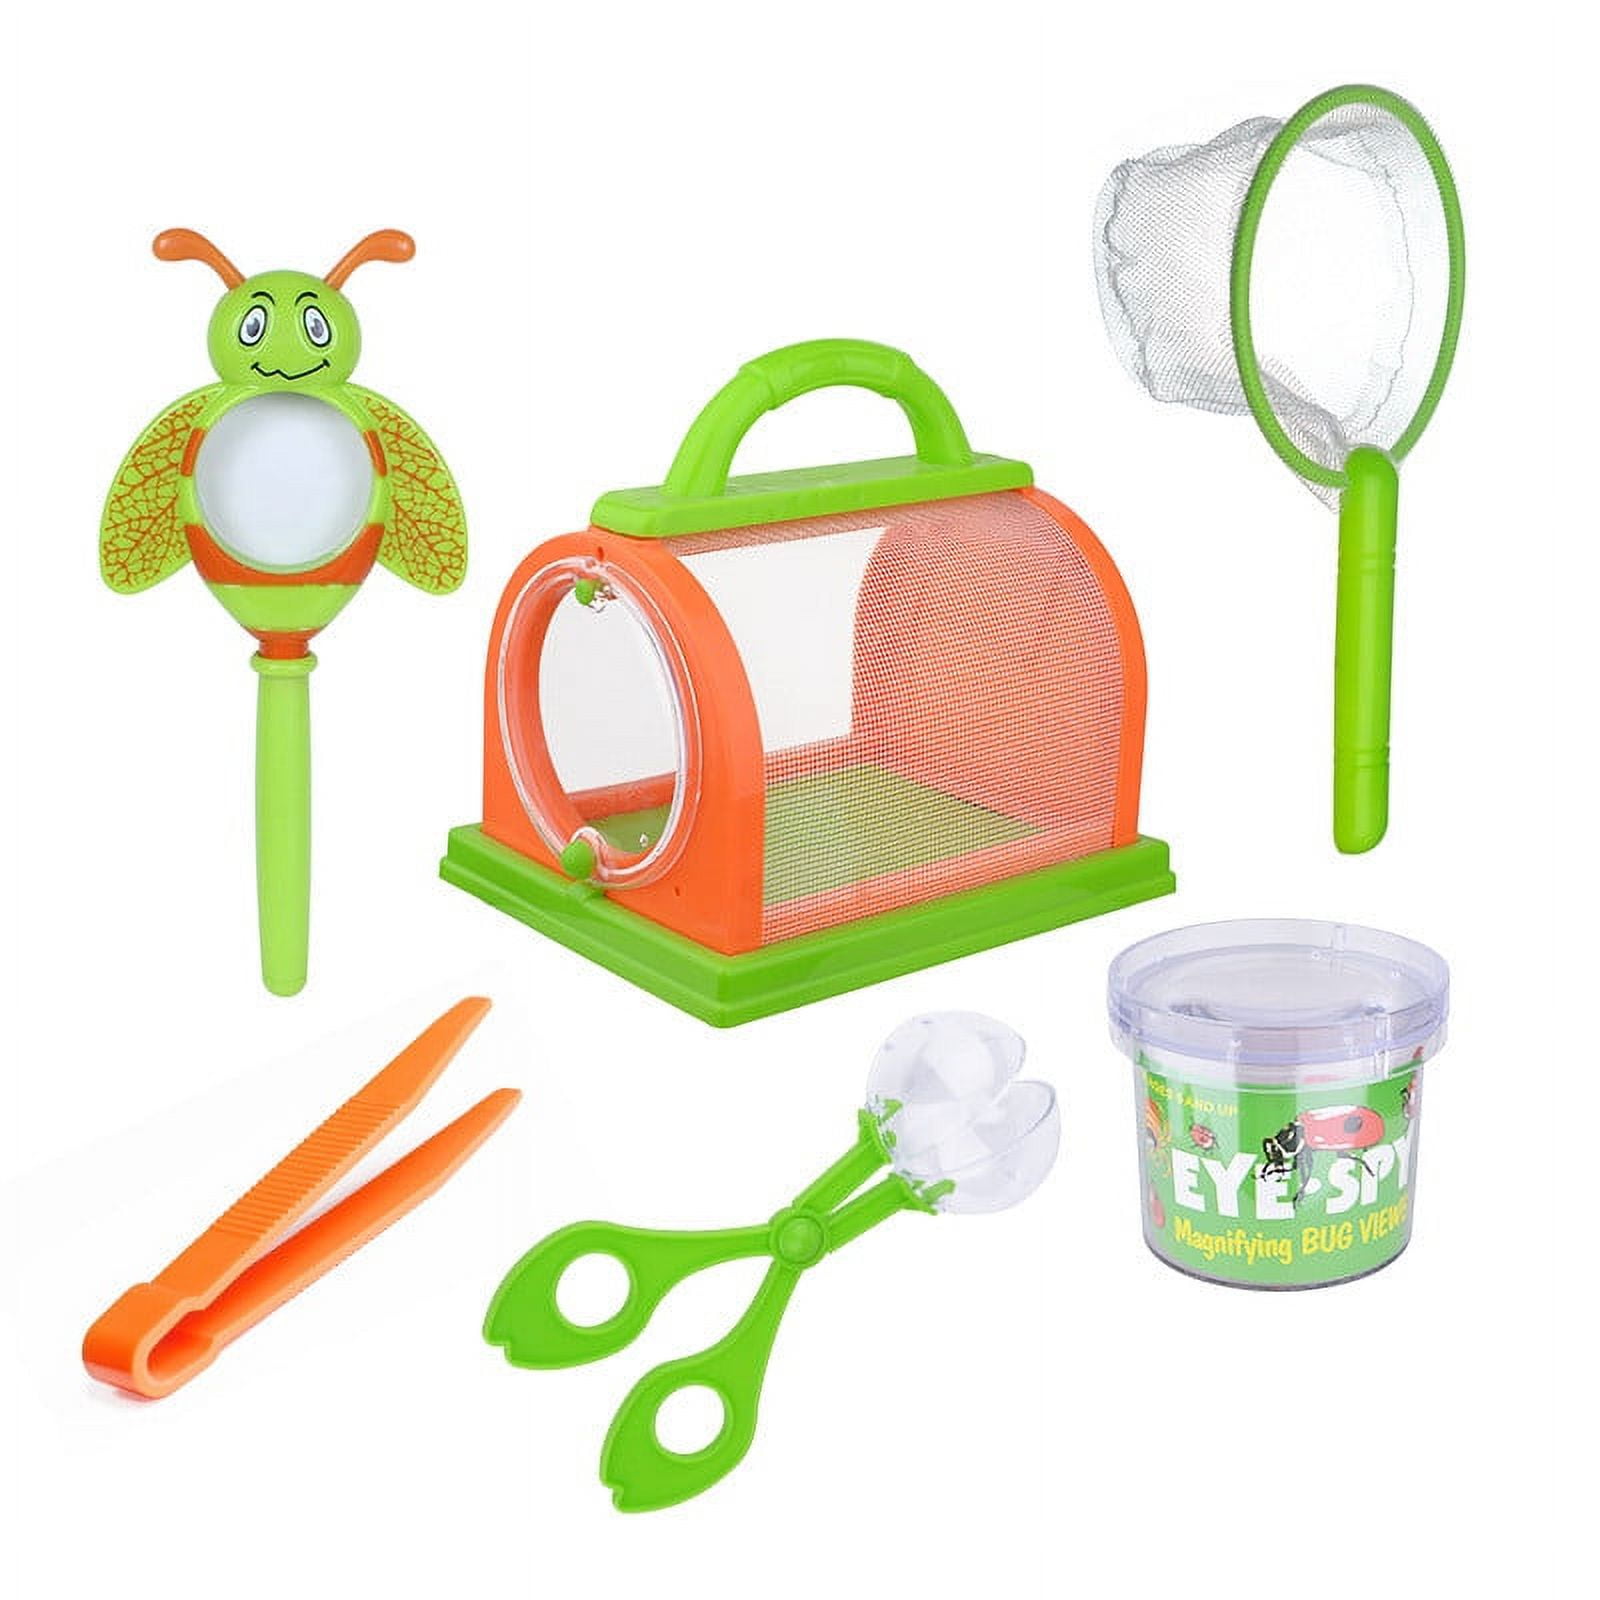 Elainilye Kids Outdoor Explorer Kit, Bug Catcher Kit for Kids